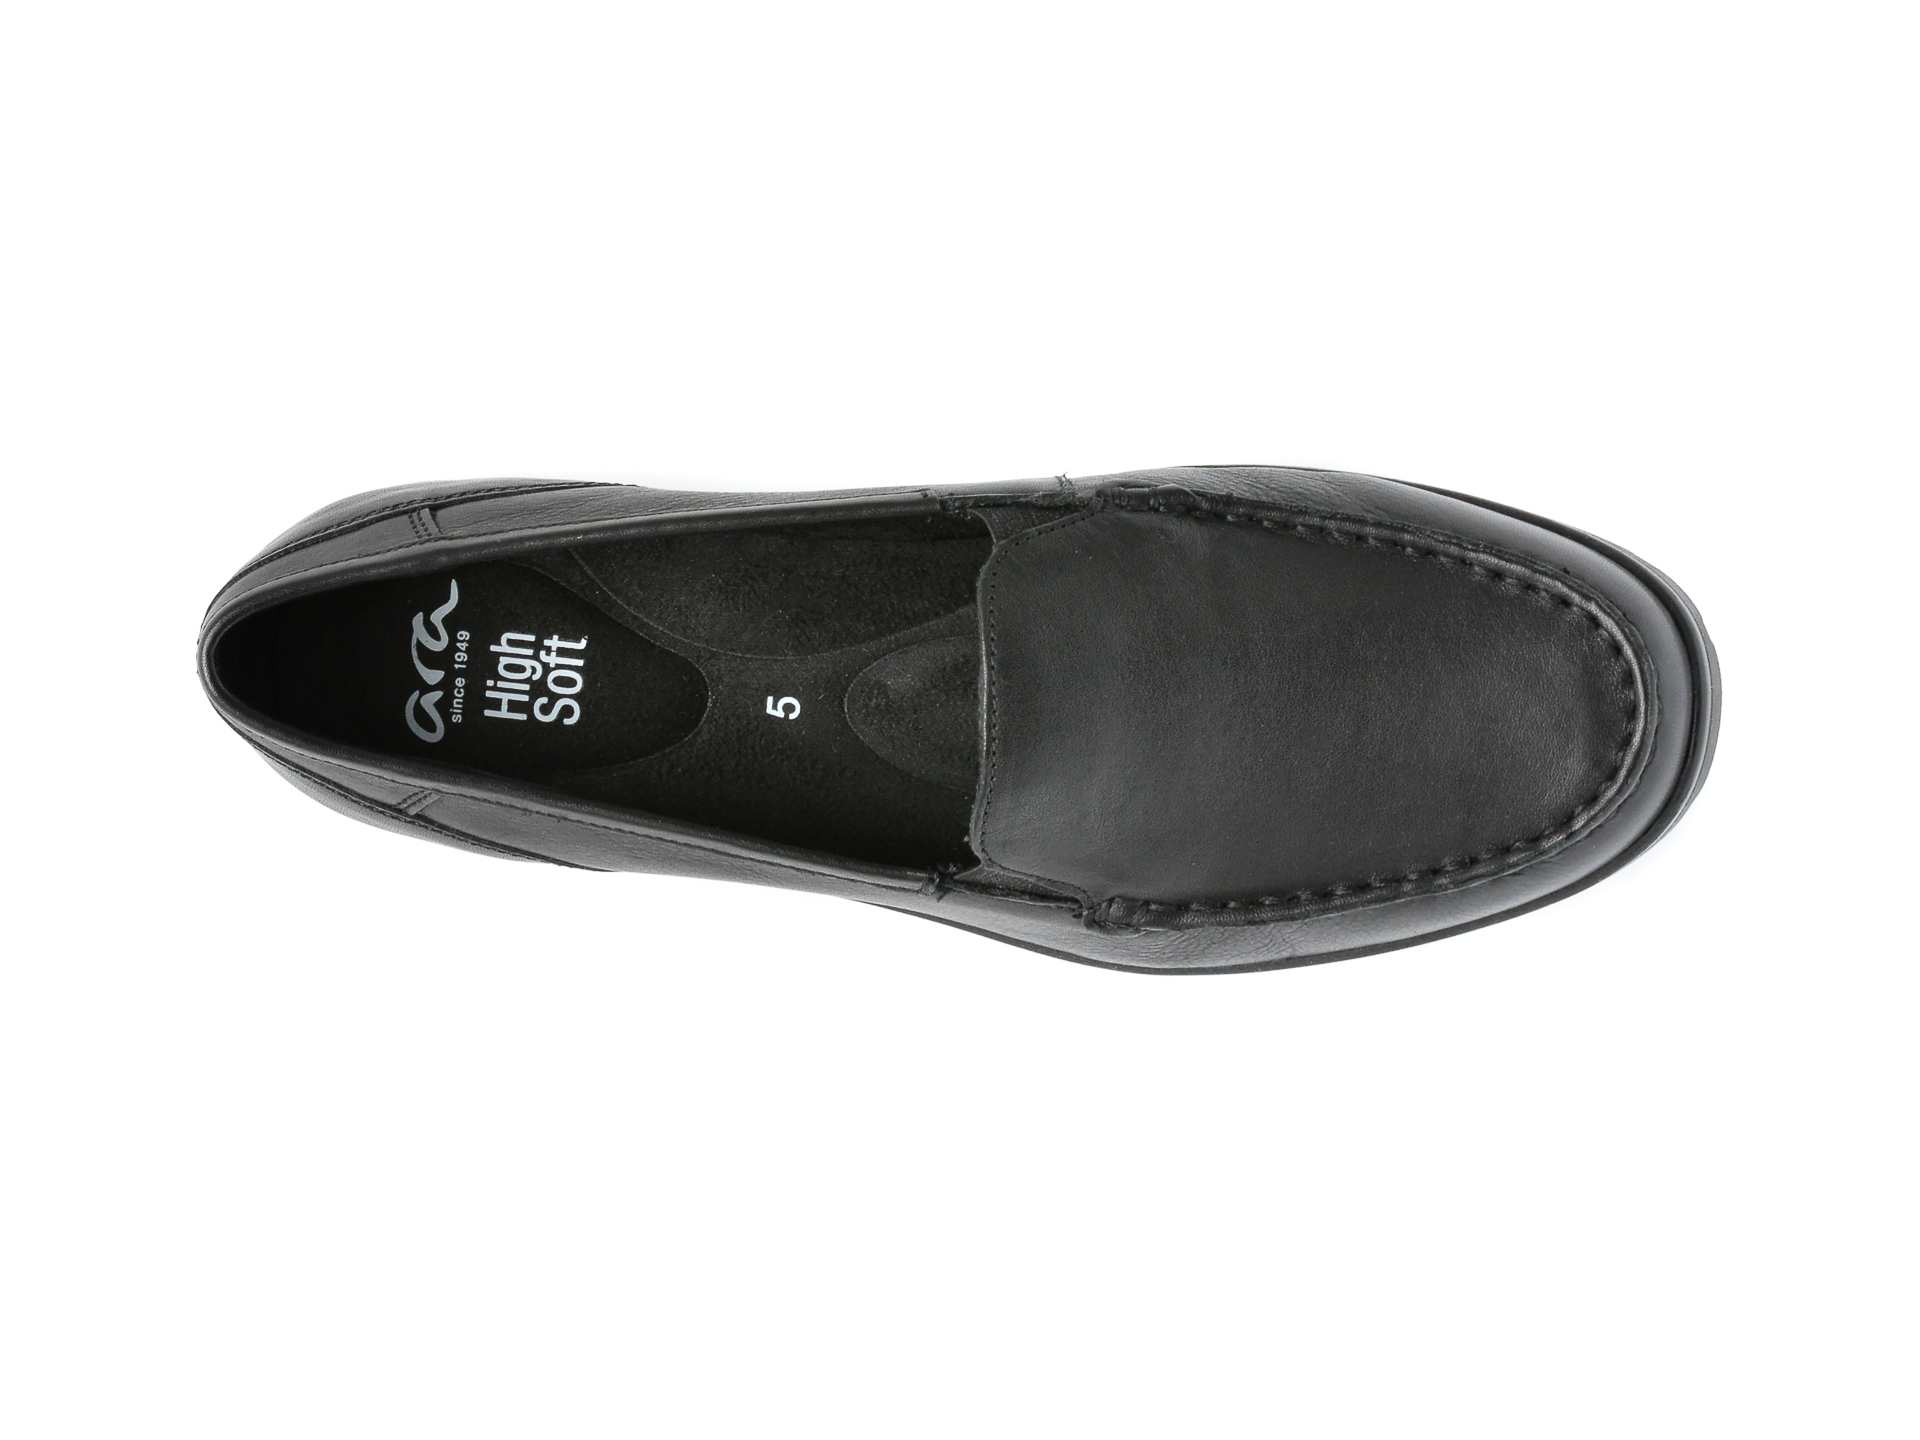 Poze Pantofi ARA negri, 14803, din piele naturala Tezyo